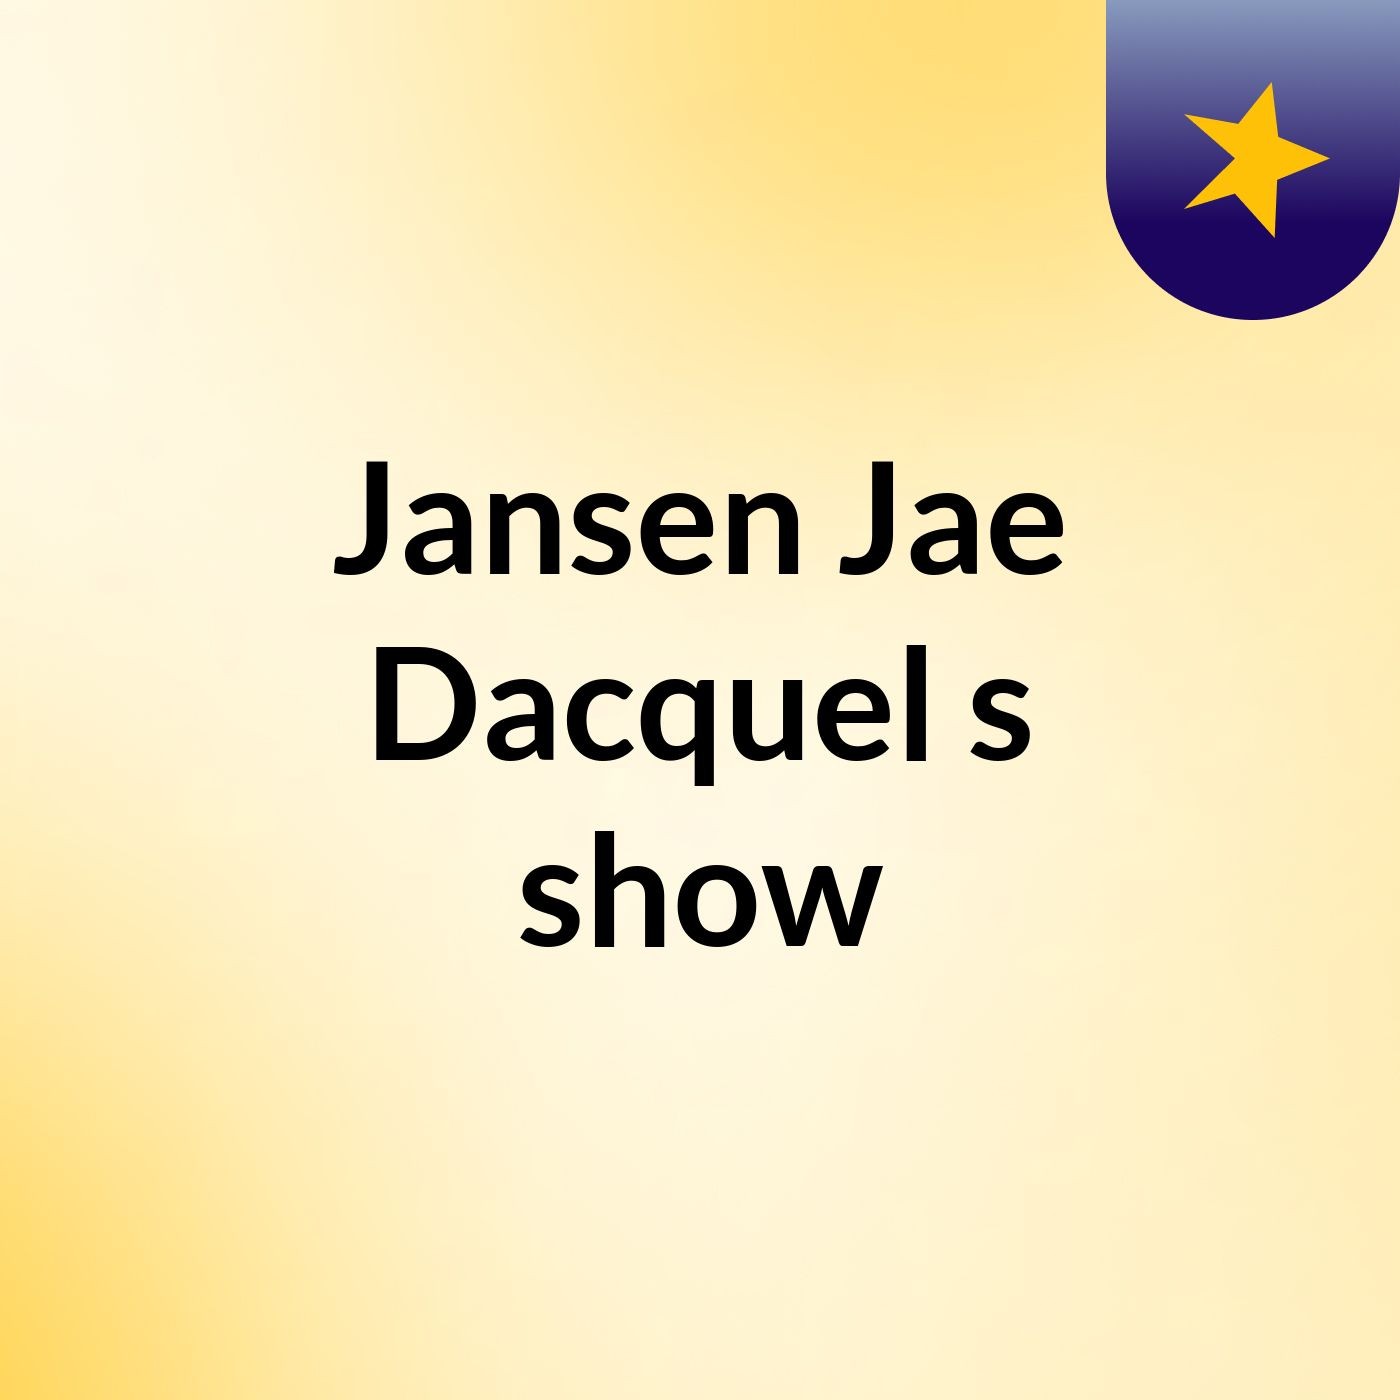 Jansen Jae Dacquel's show